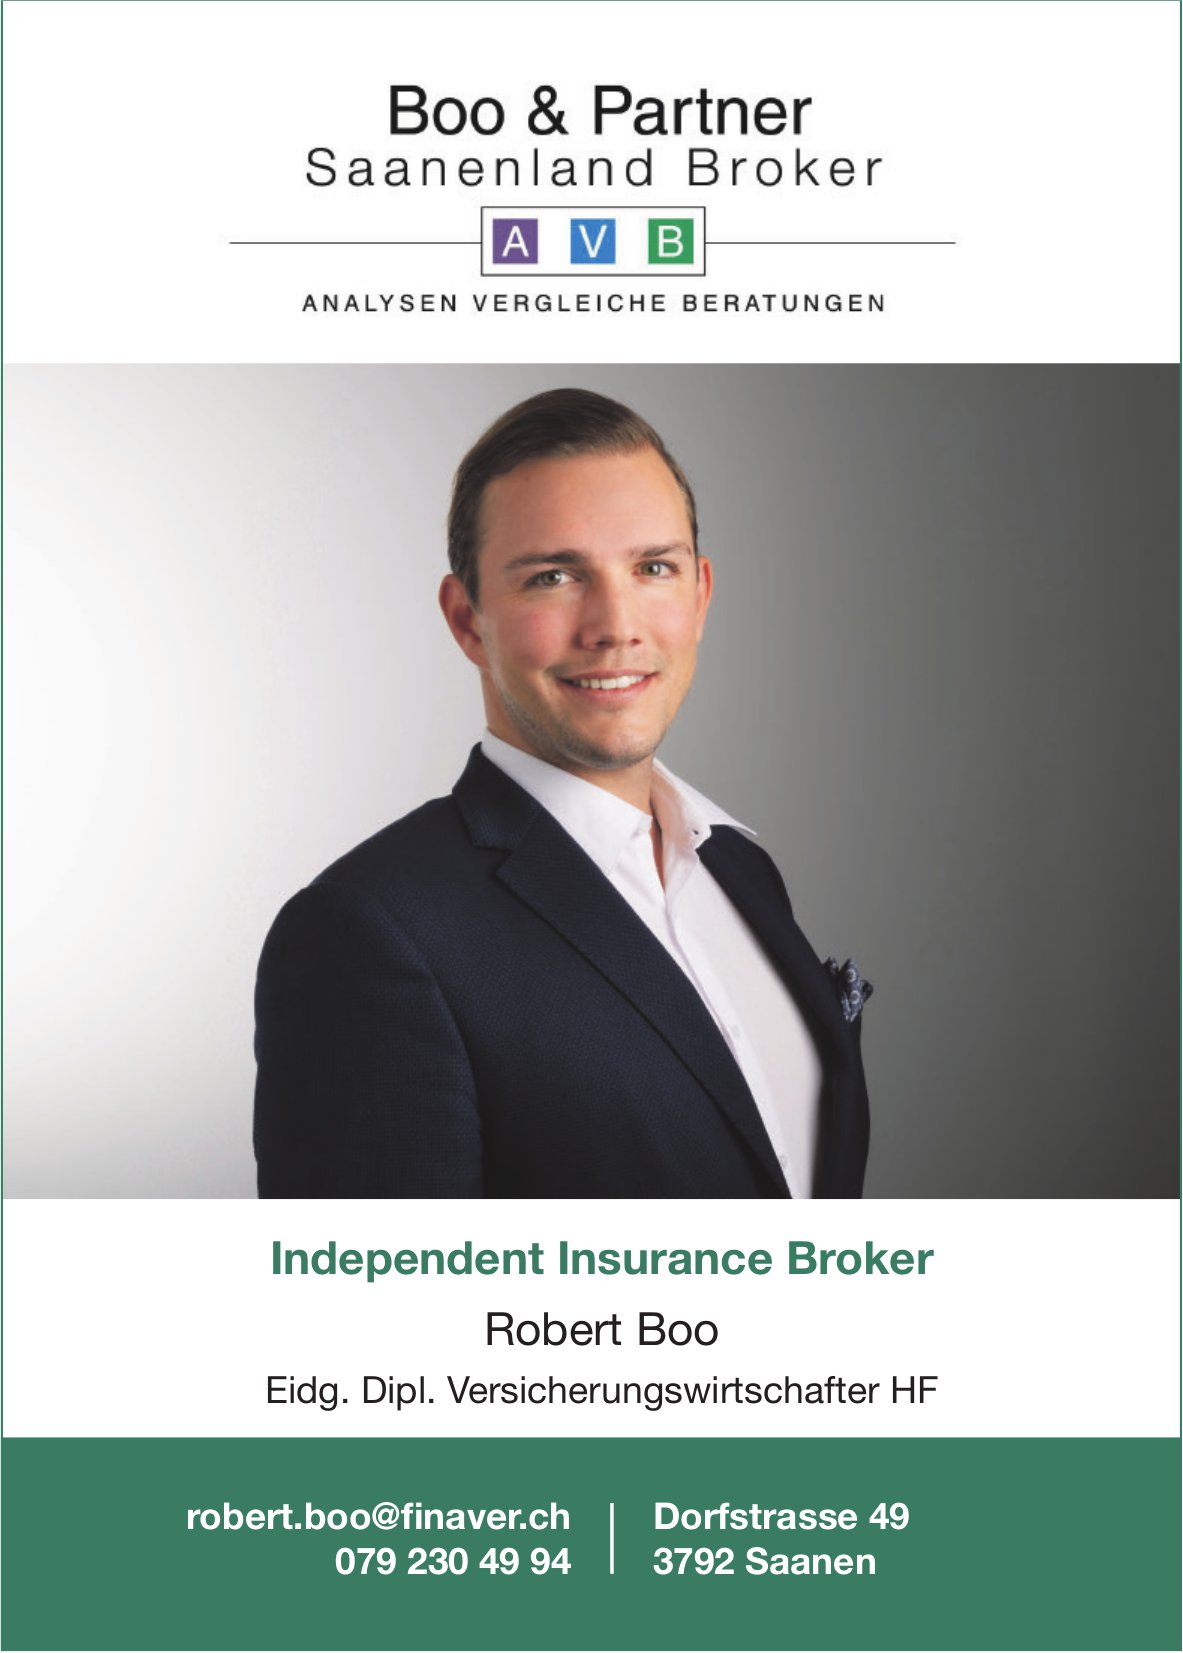 Boo & Partner, Saanenland Broker, Saanen - Independent Insurance Broker